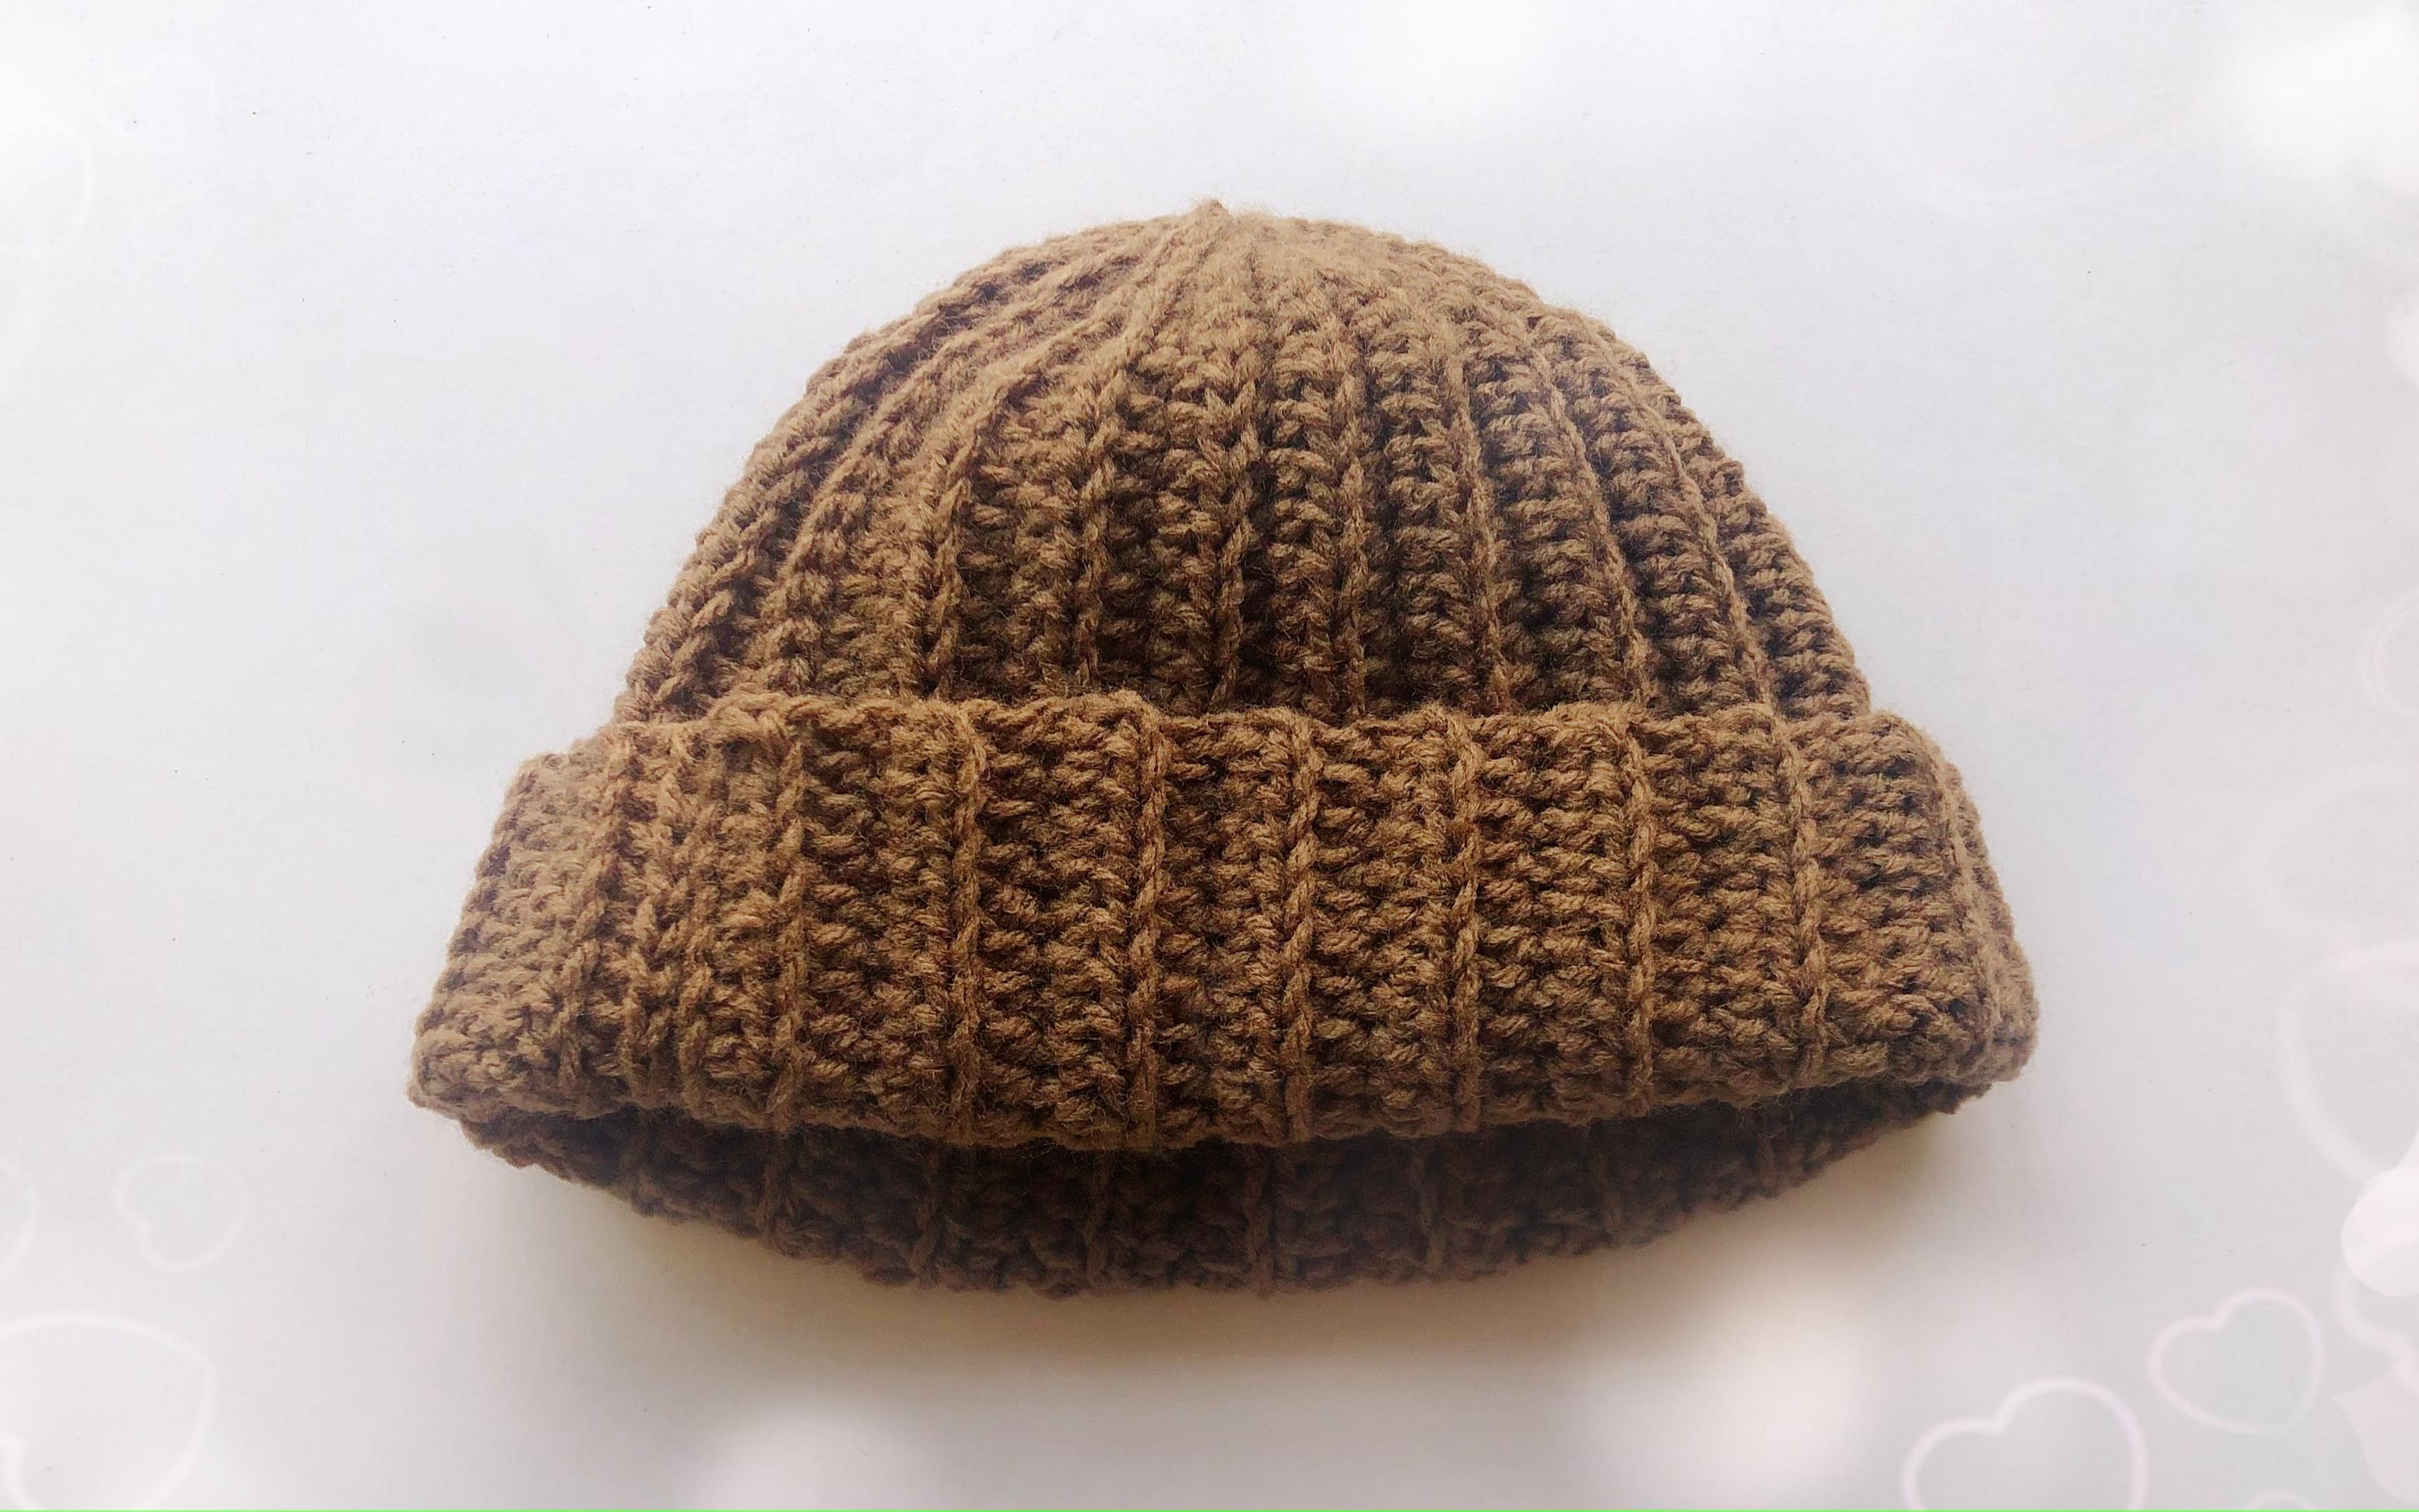 毛线编织一款百搭的钩针羊毛帽,花样十分简洁大方,适合男女老少